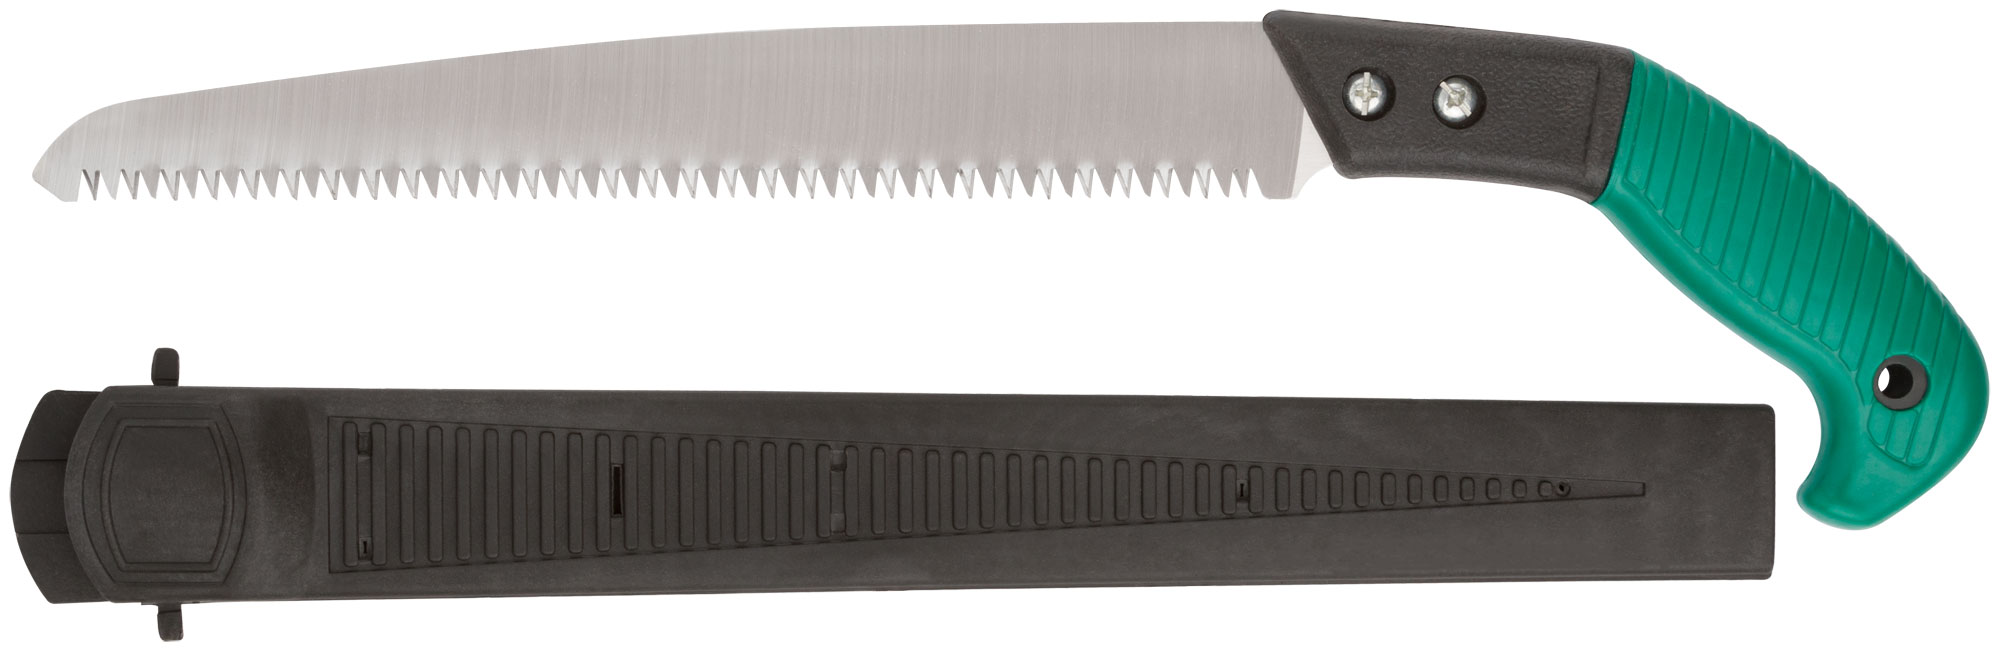 Ножовка садовая с ножнами, 300 мм, FIT 40595 ножовка садовая 300 мм пластиковая ручка